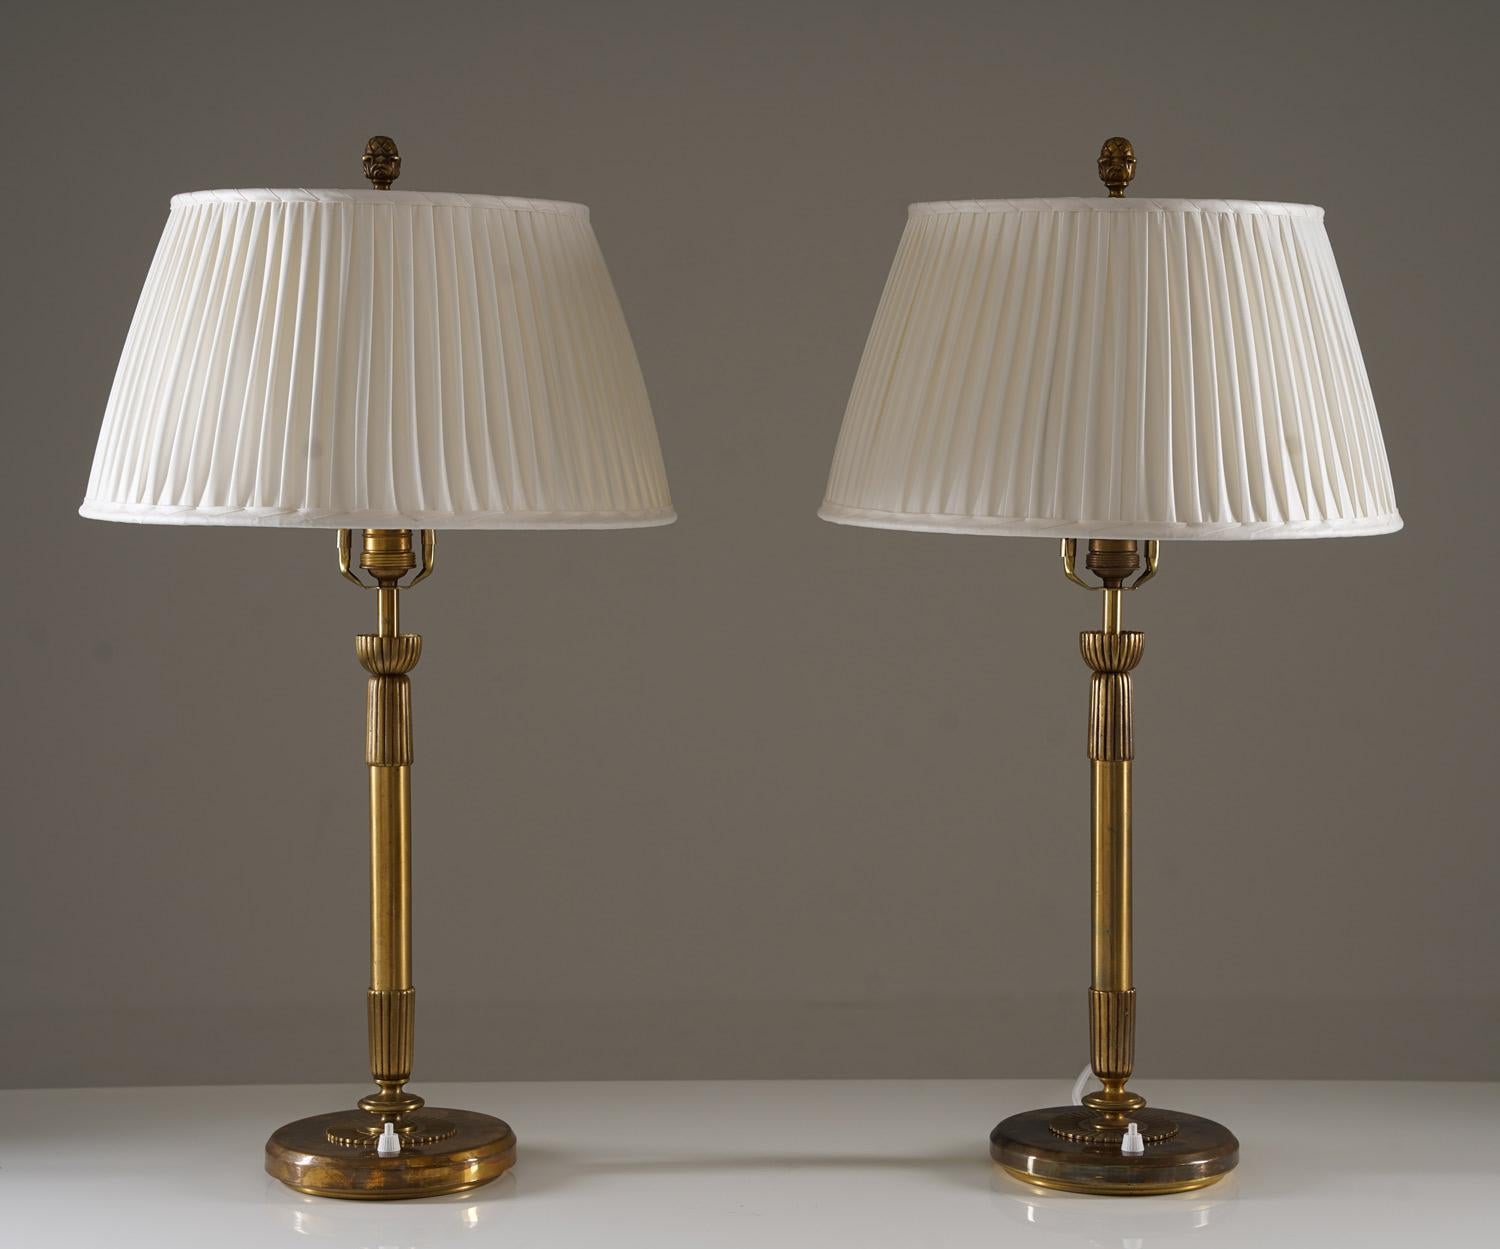 Paire de lampes de table majestueuses fabriquées par Einar Bäckström, Suède, années 1950. 
Les lampes sont en laiton et ont de nouveaux abat-jours en chintz plissés à la main.

État : très bon état. Les abat-jours sont de nouveaux abat-jours en